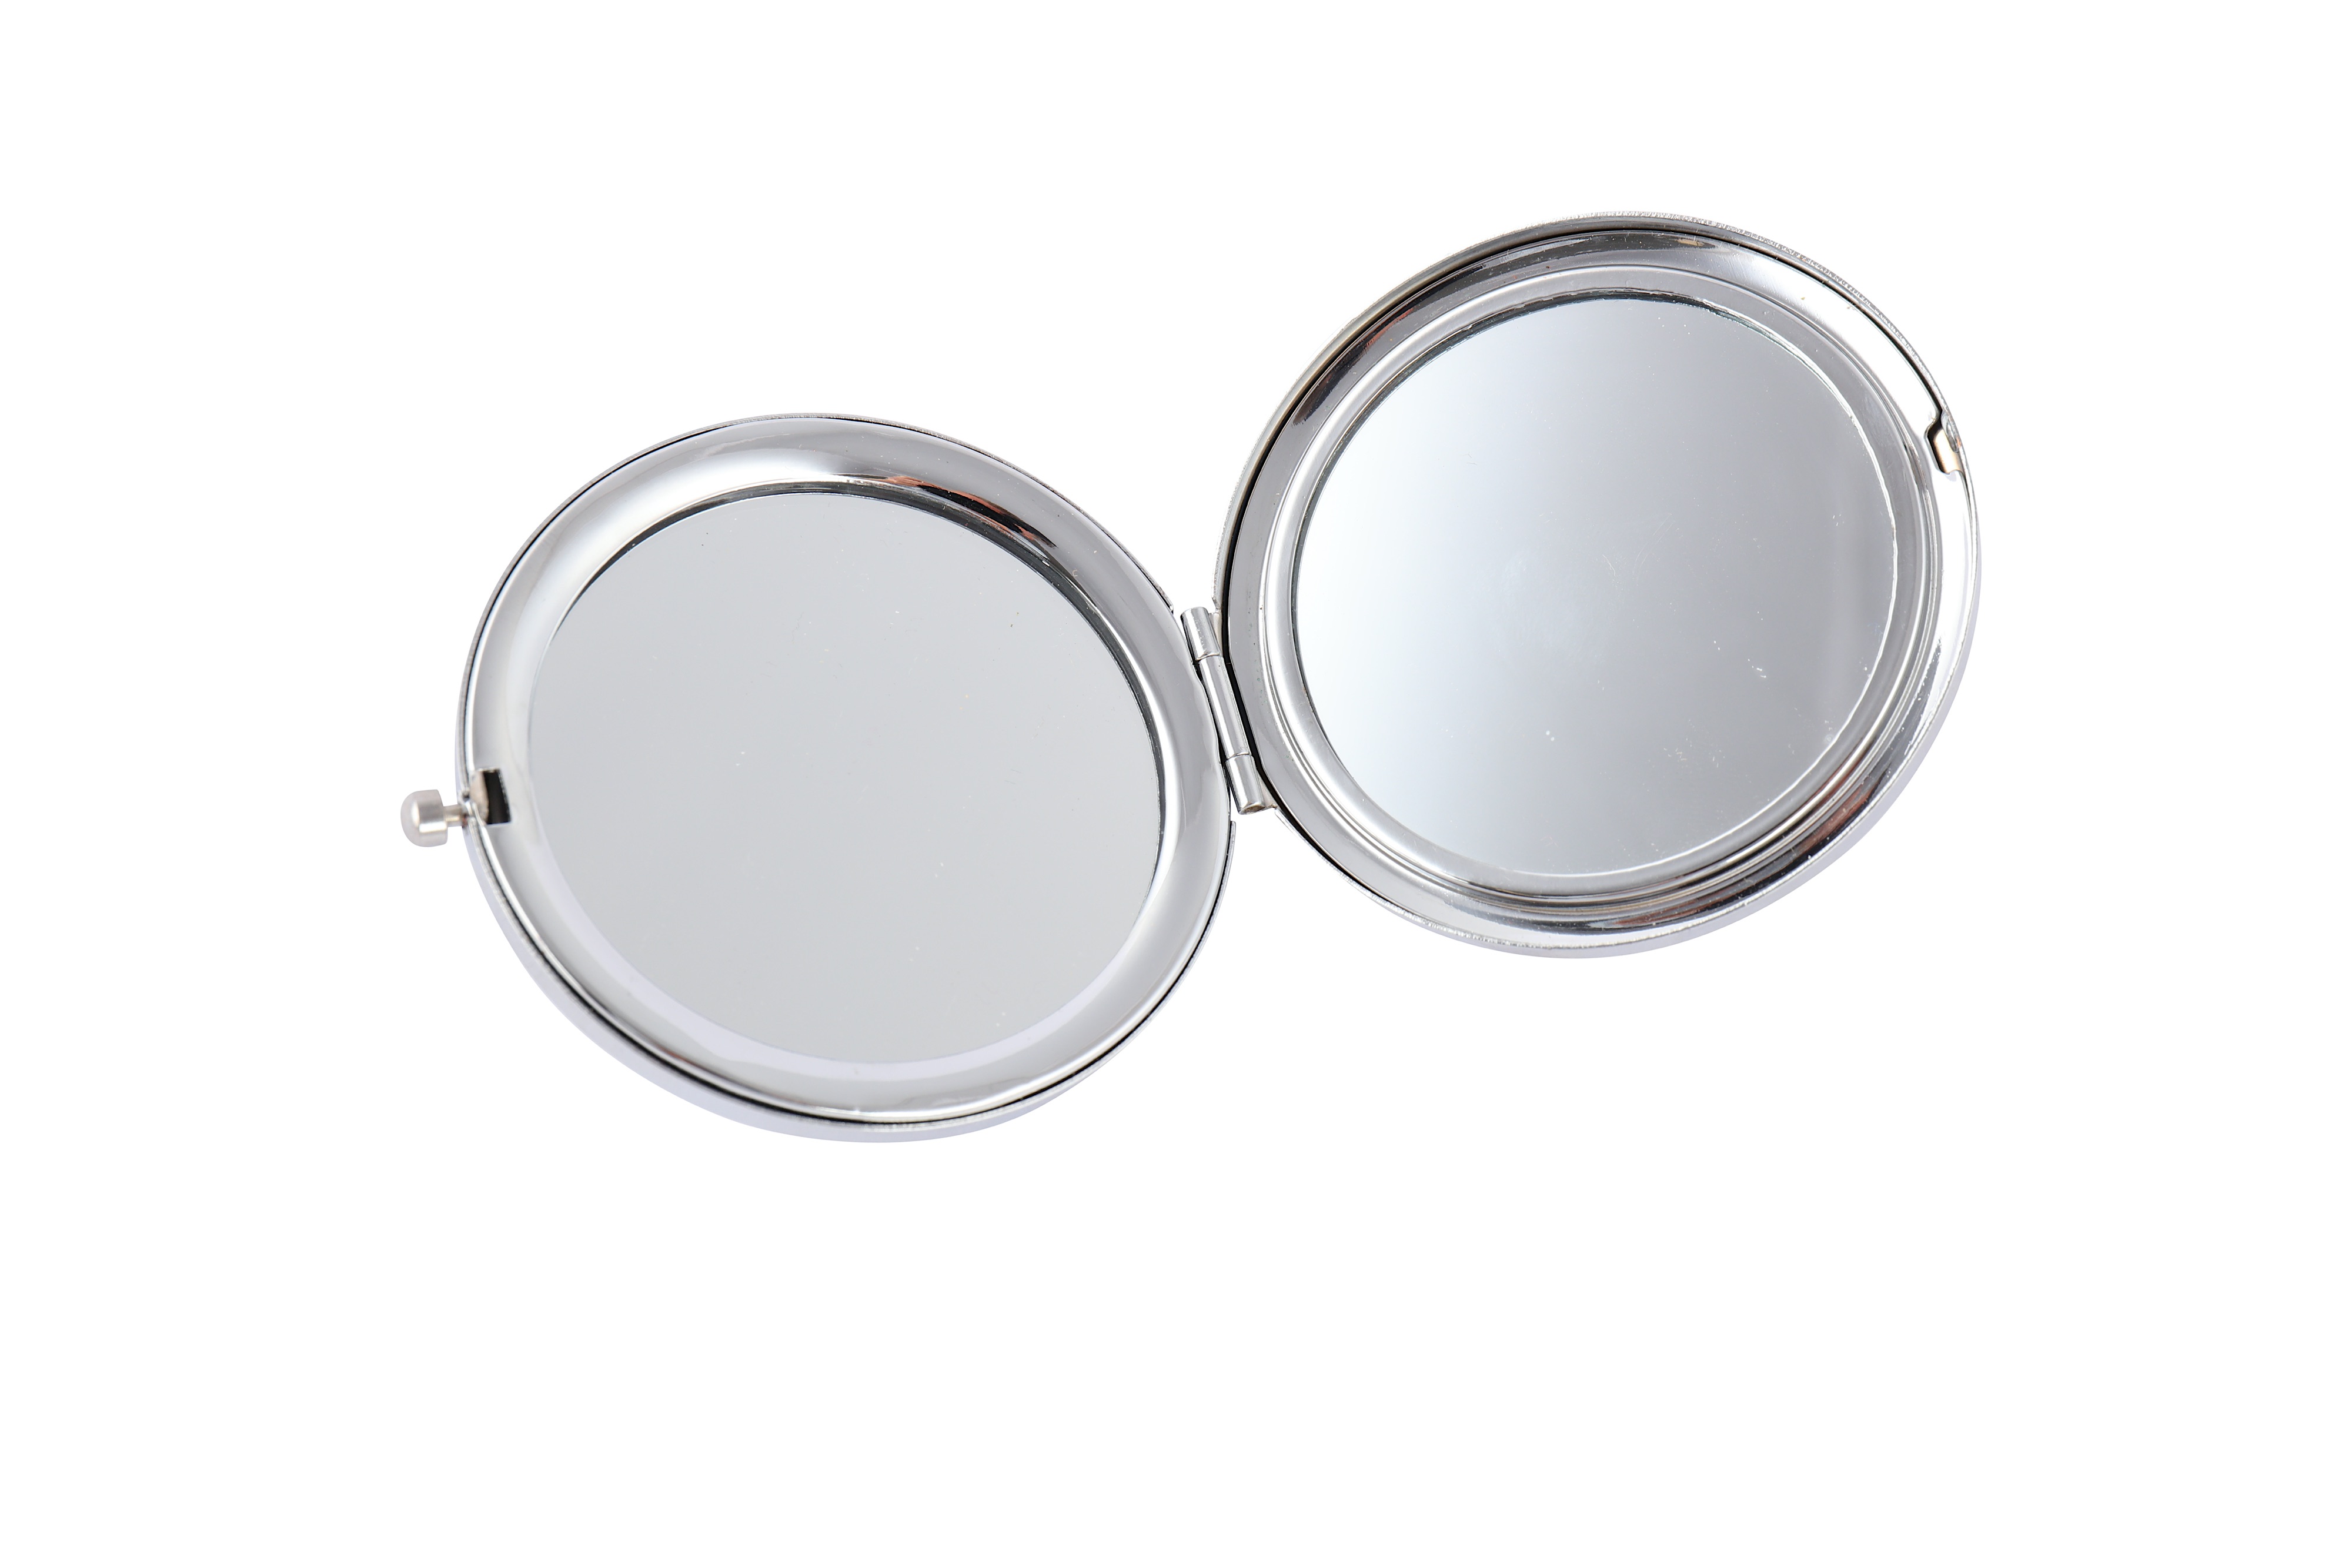 vuitton compact mirror